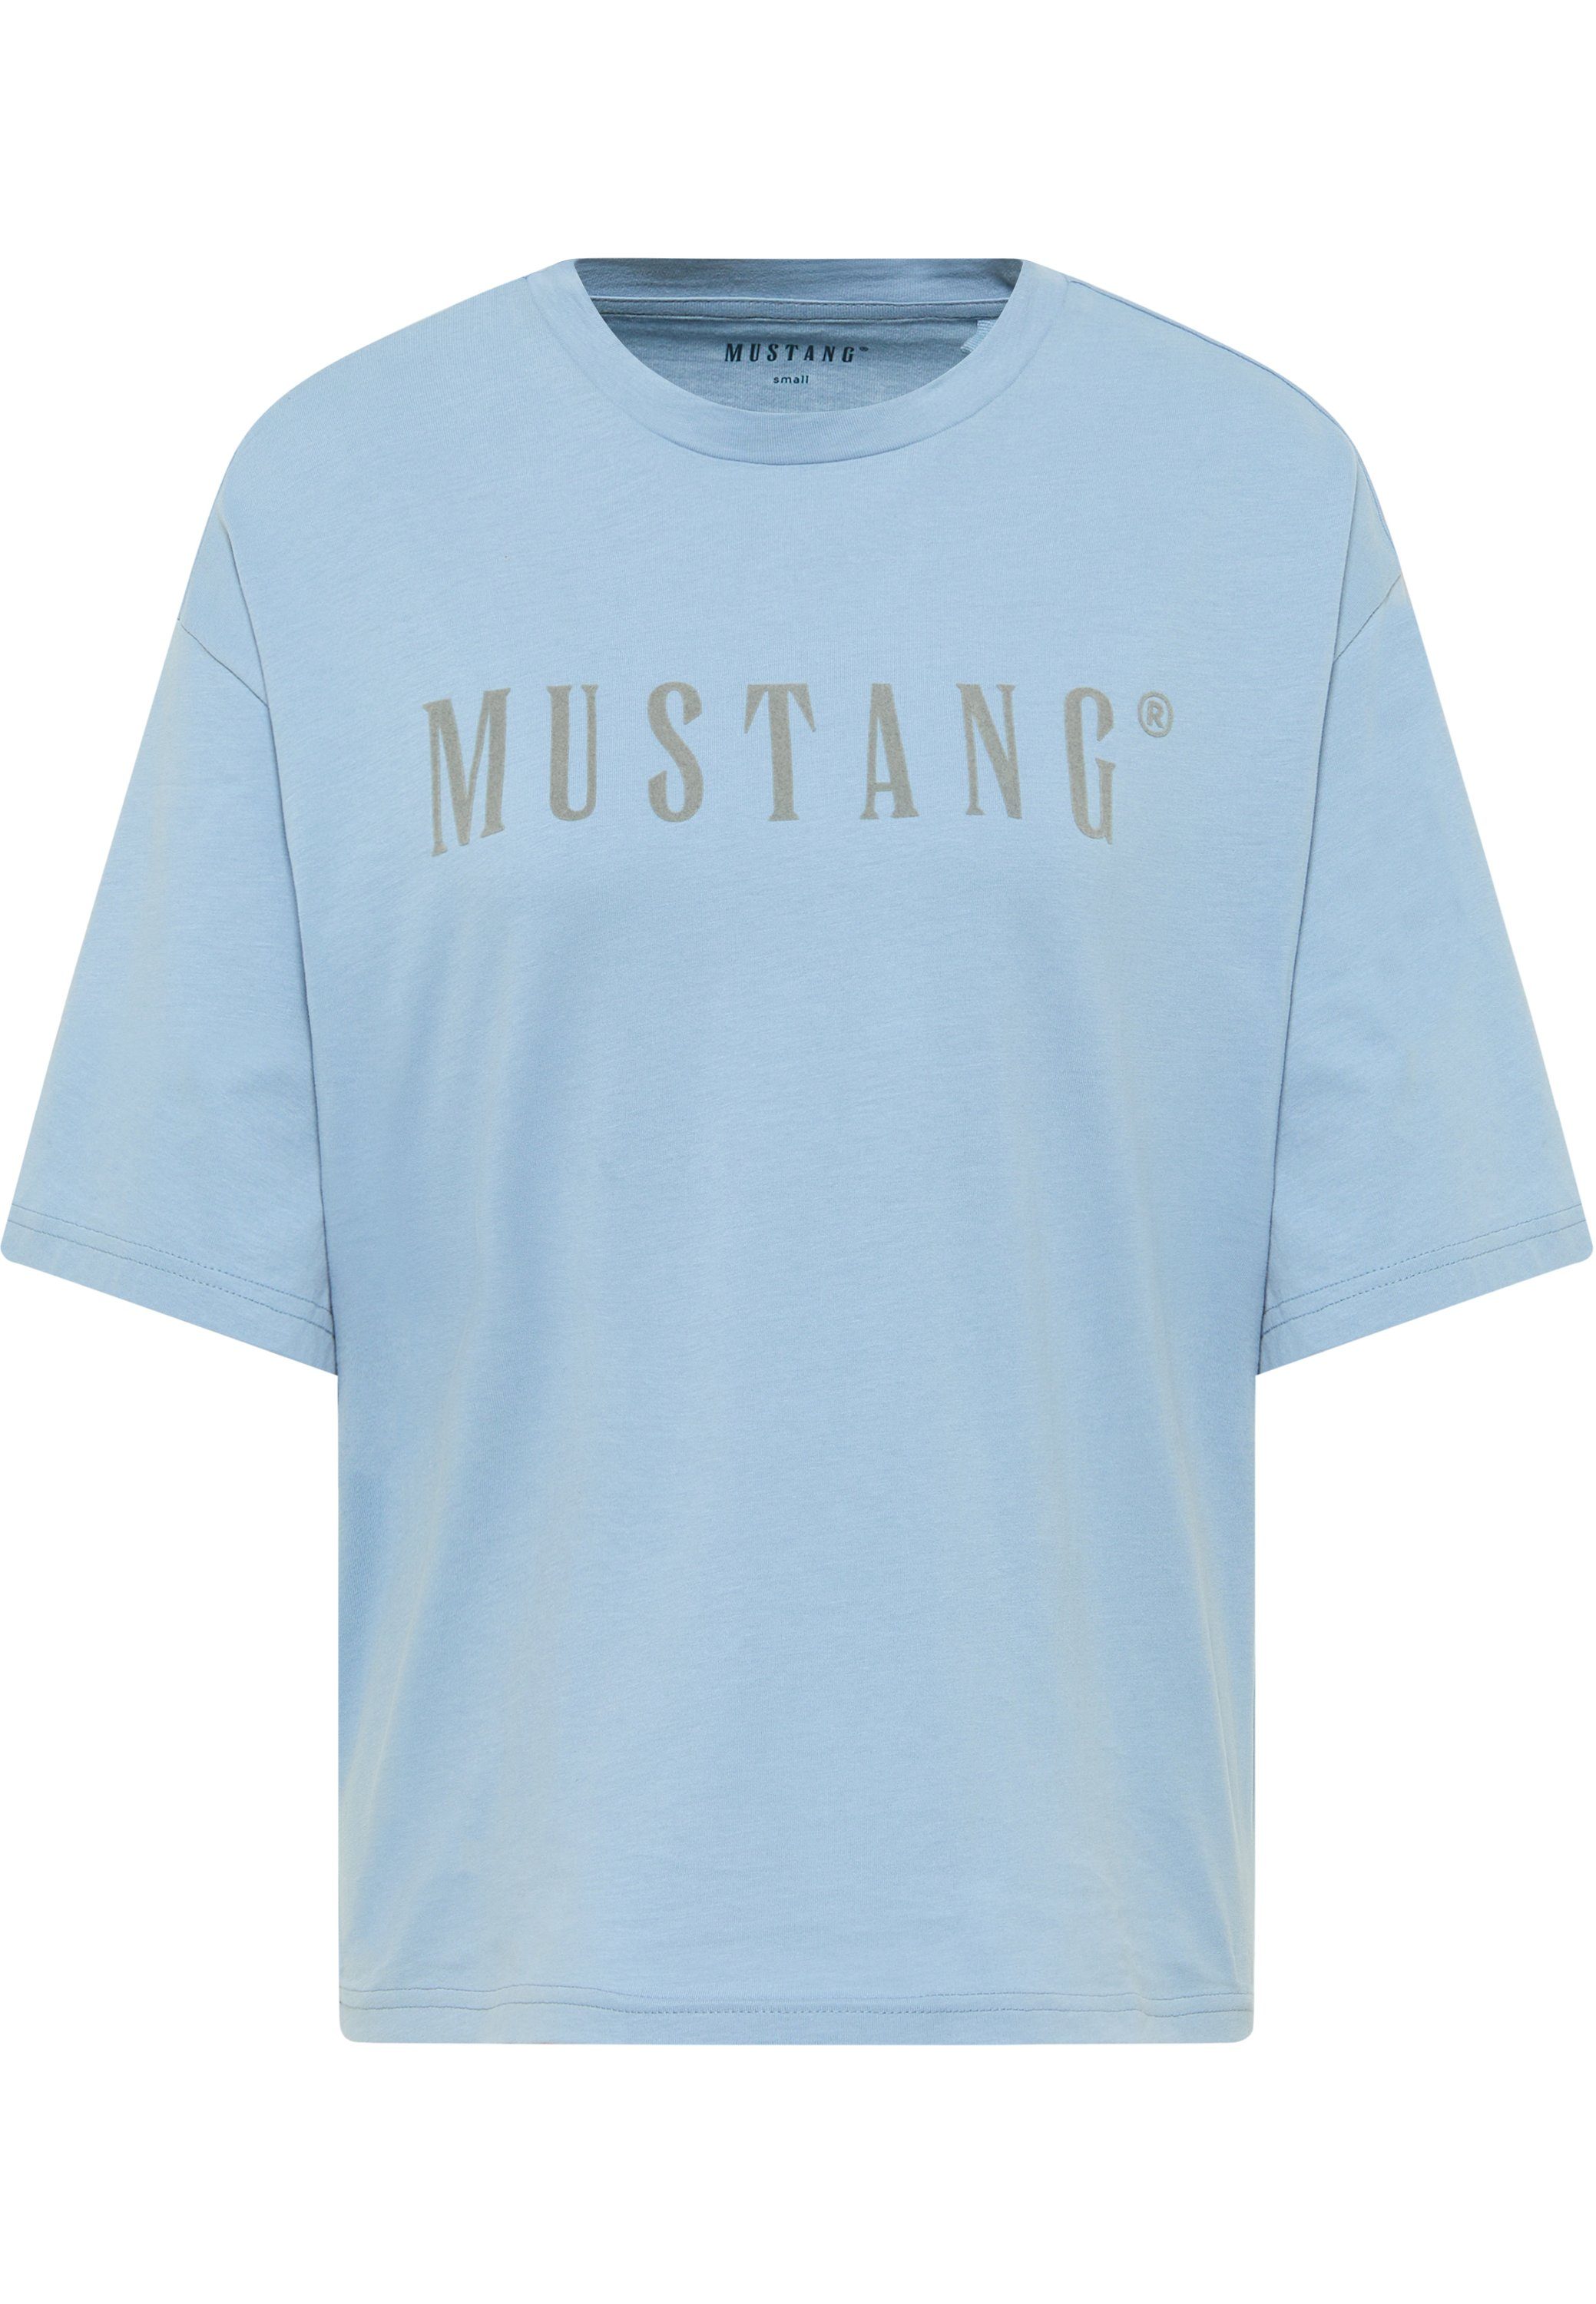 Mustang T-Shirt Kurzarmshirt mittelblau MUSTANG T-Shirt